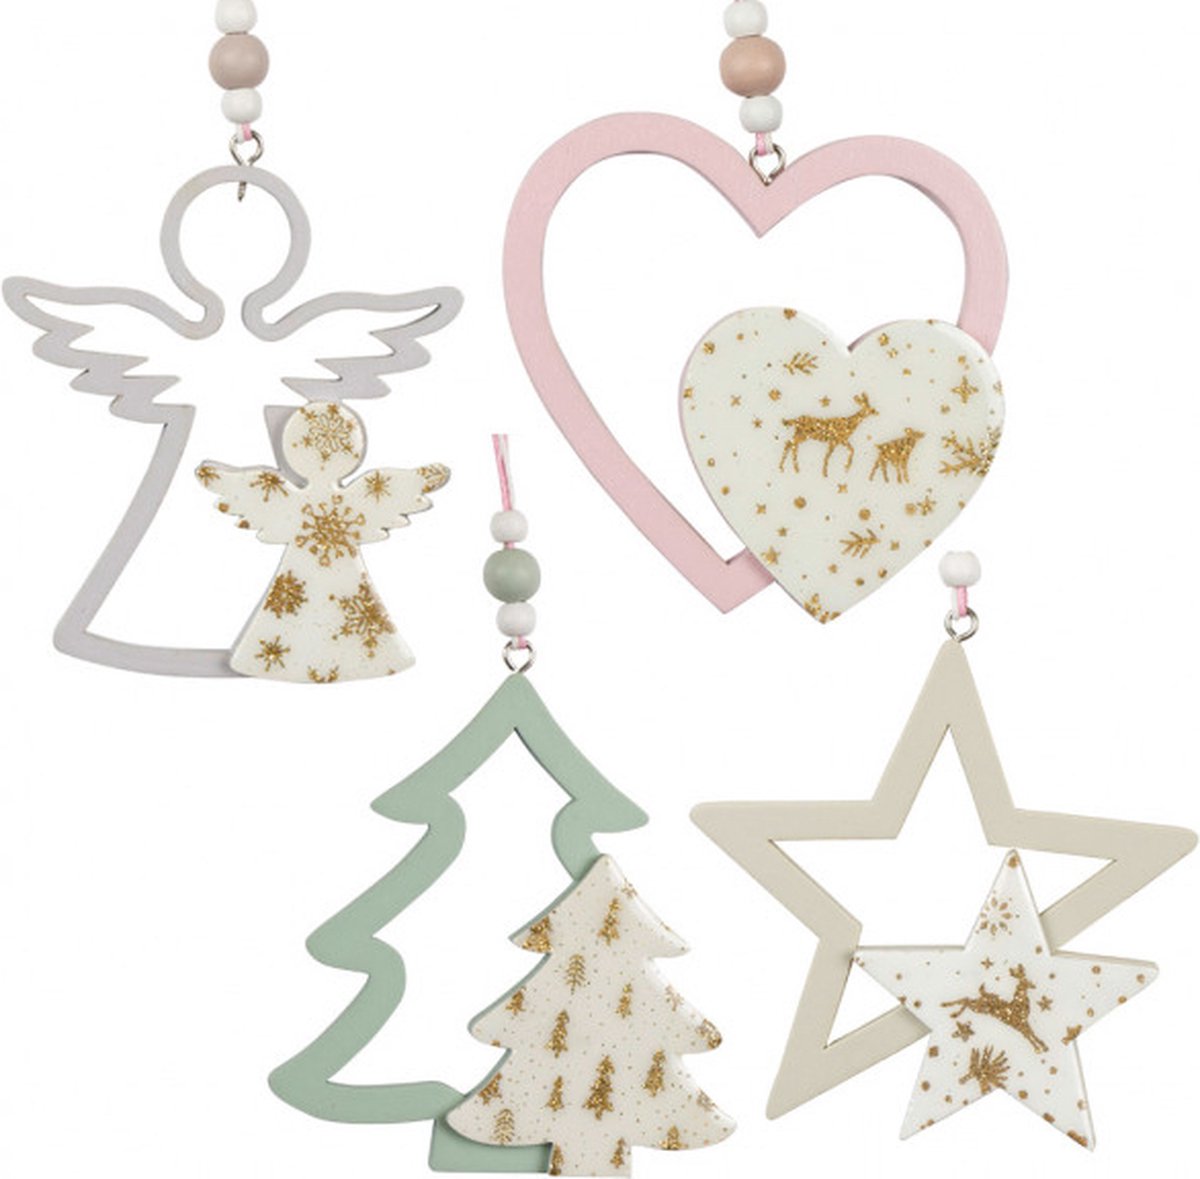 Christmas Paradise - Kerstboom Decoratie - Set van 4 stuks - Engel - Hart - Boom - Ster - Hout - Glitter - 10 cm - Christmas - Kerstboom - Versiering